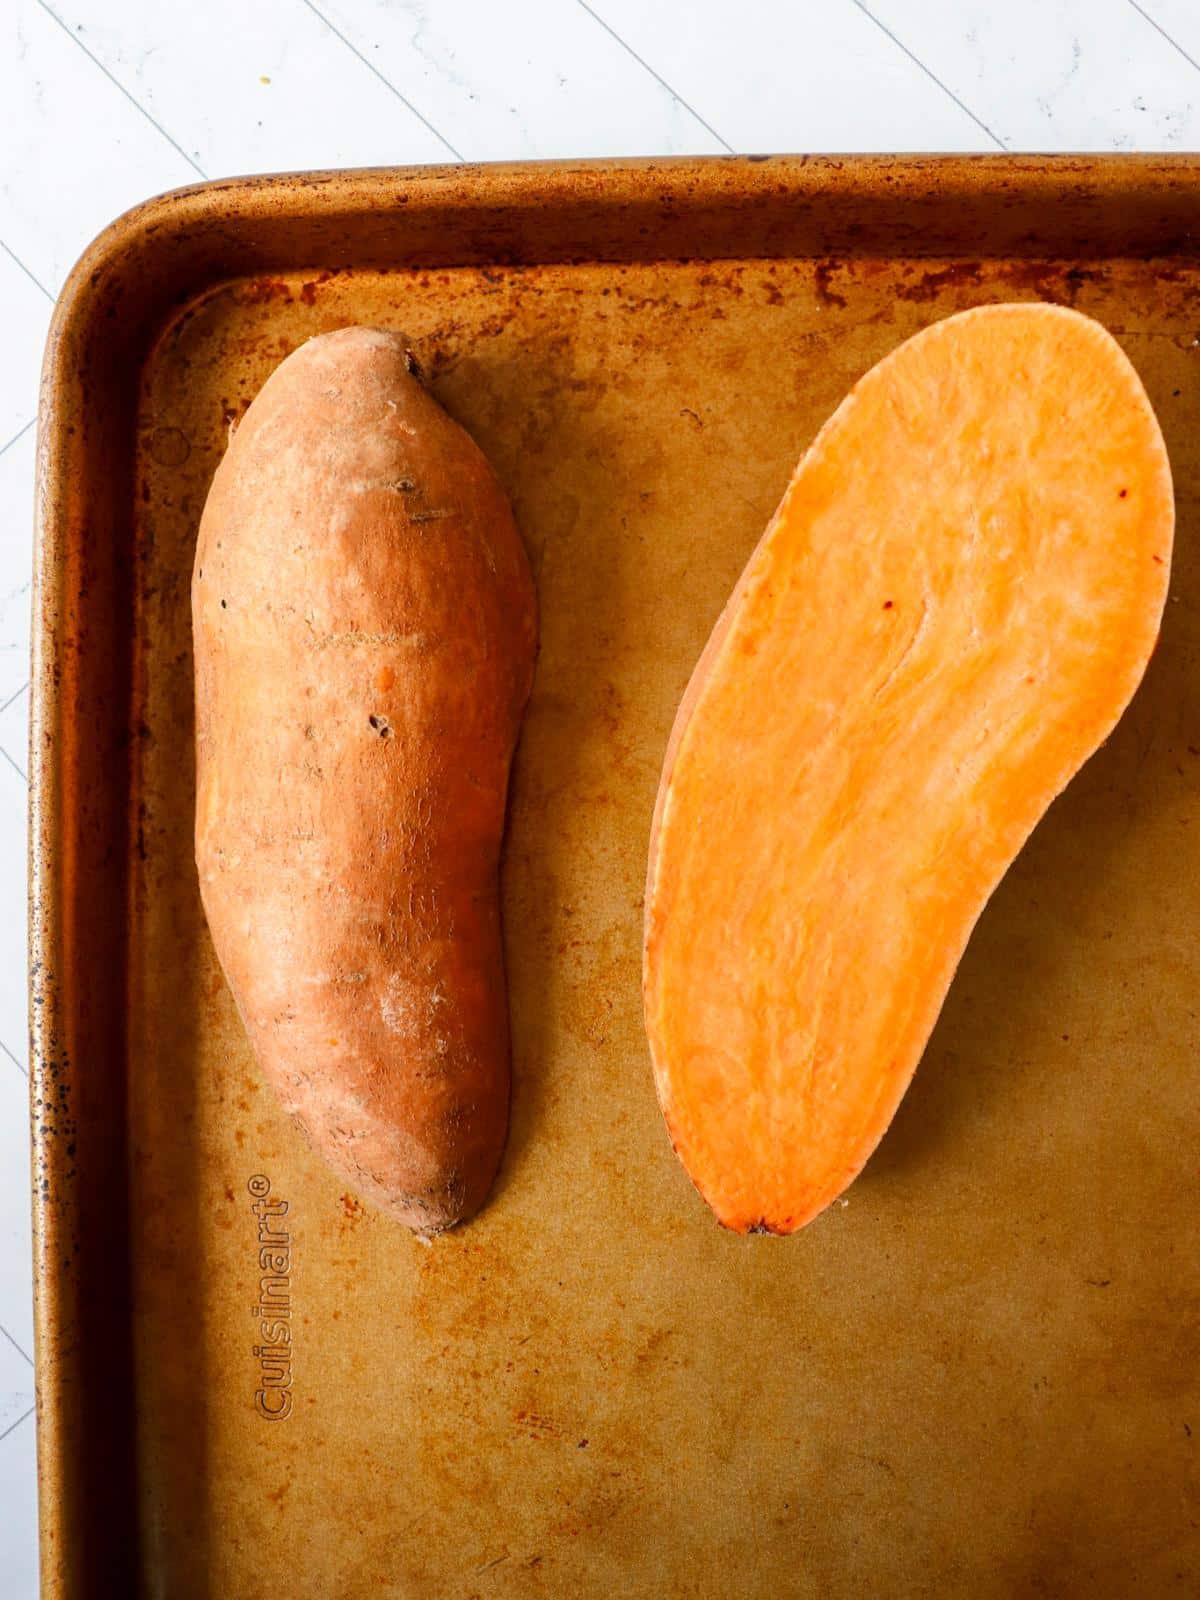 A sweet potato cut in half on a baking sheet.